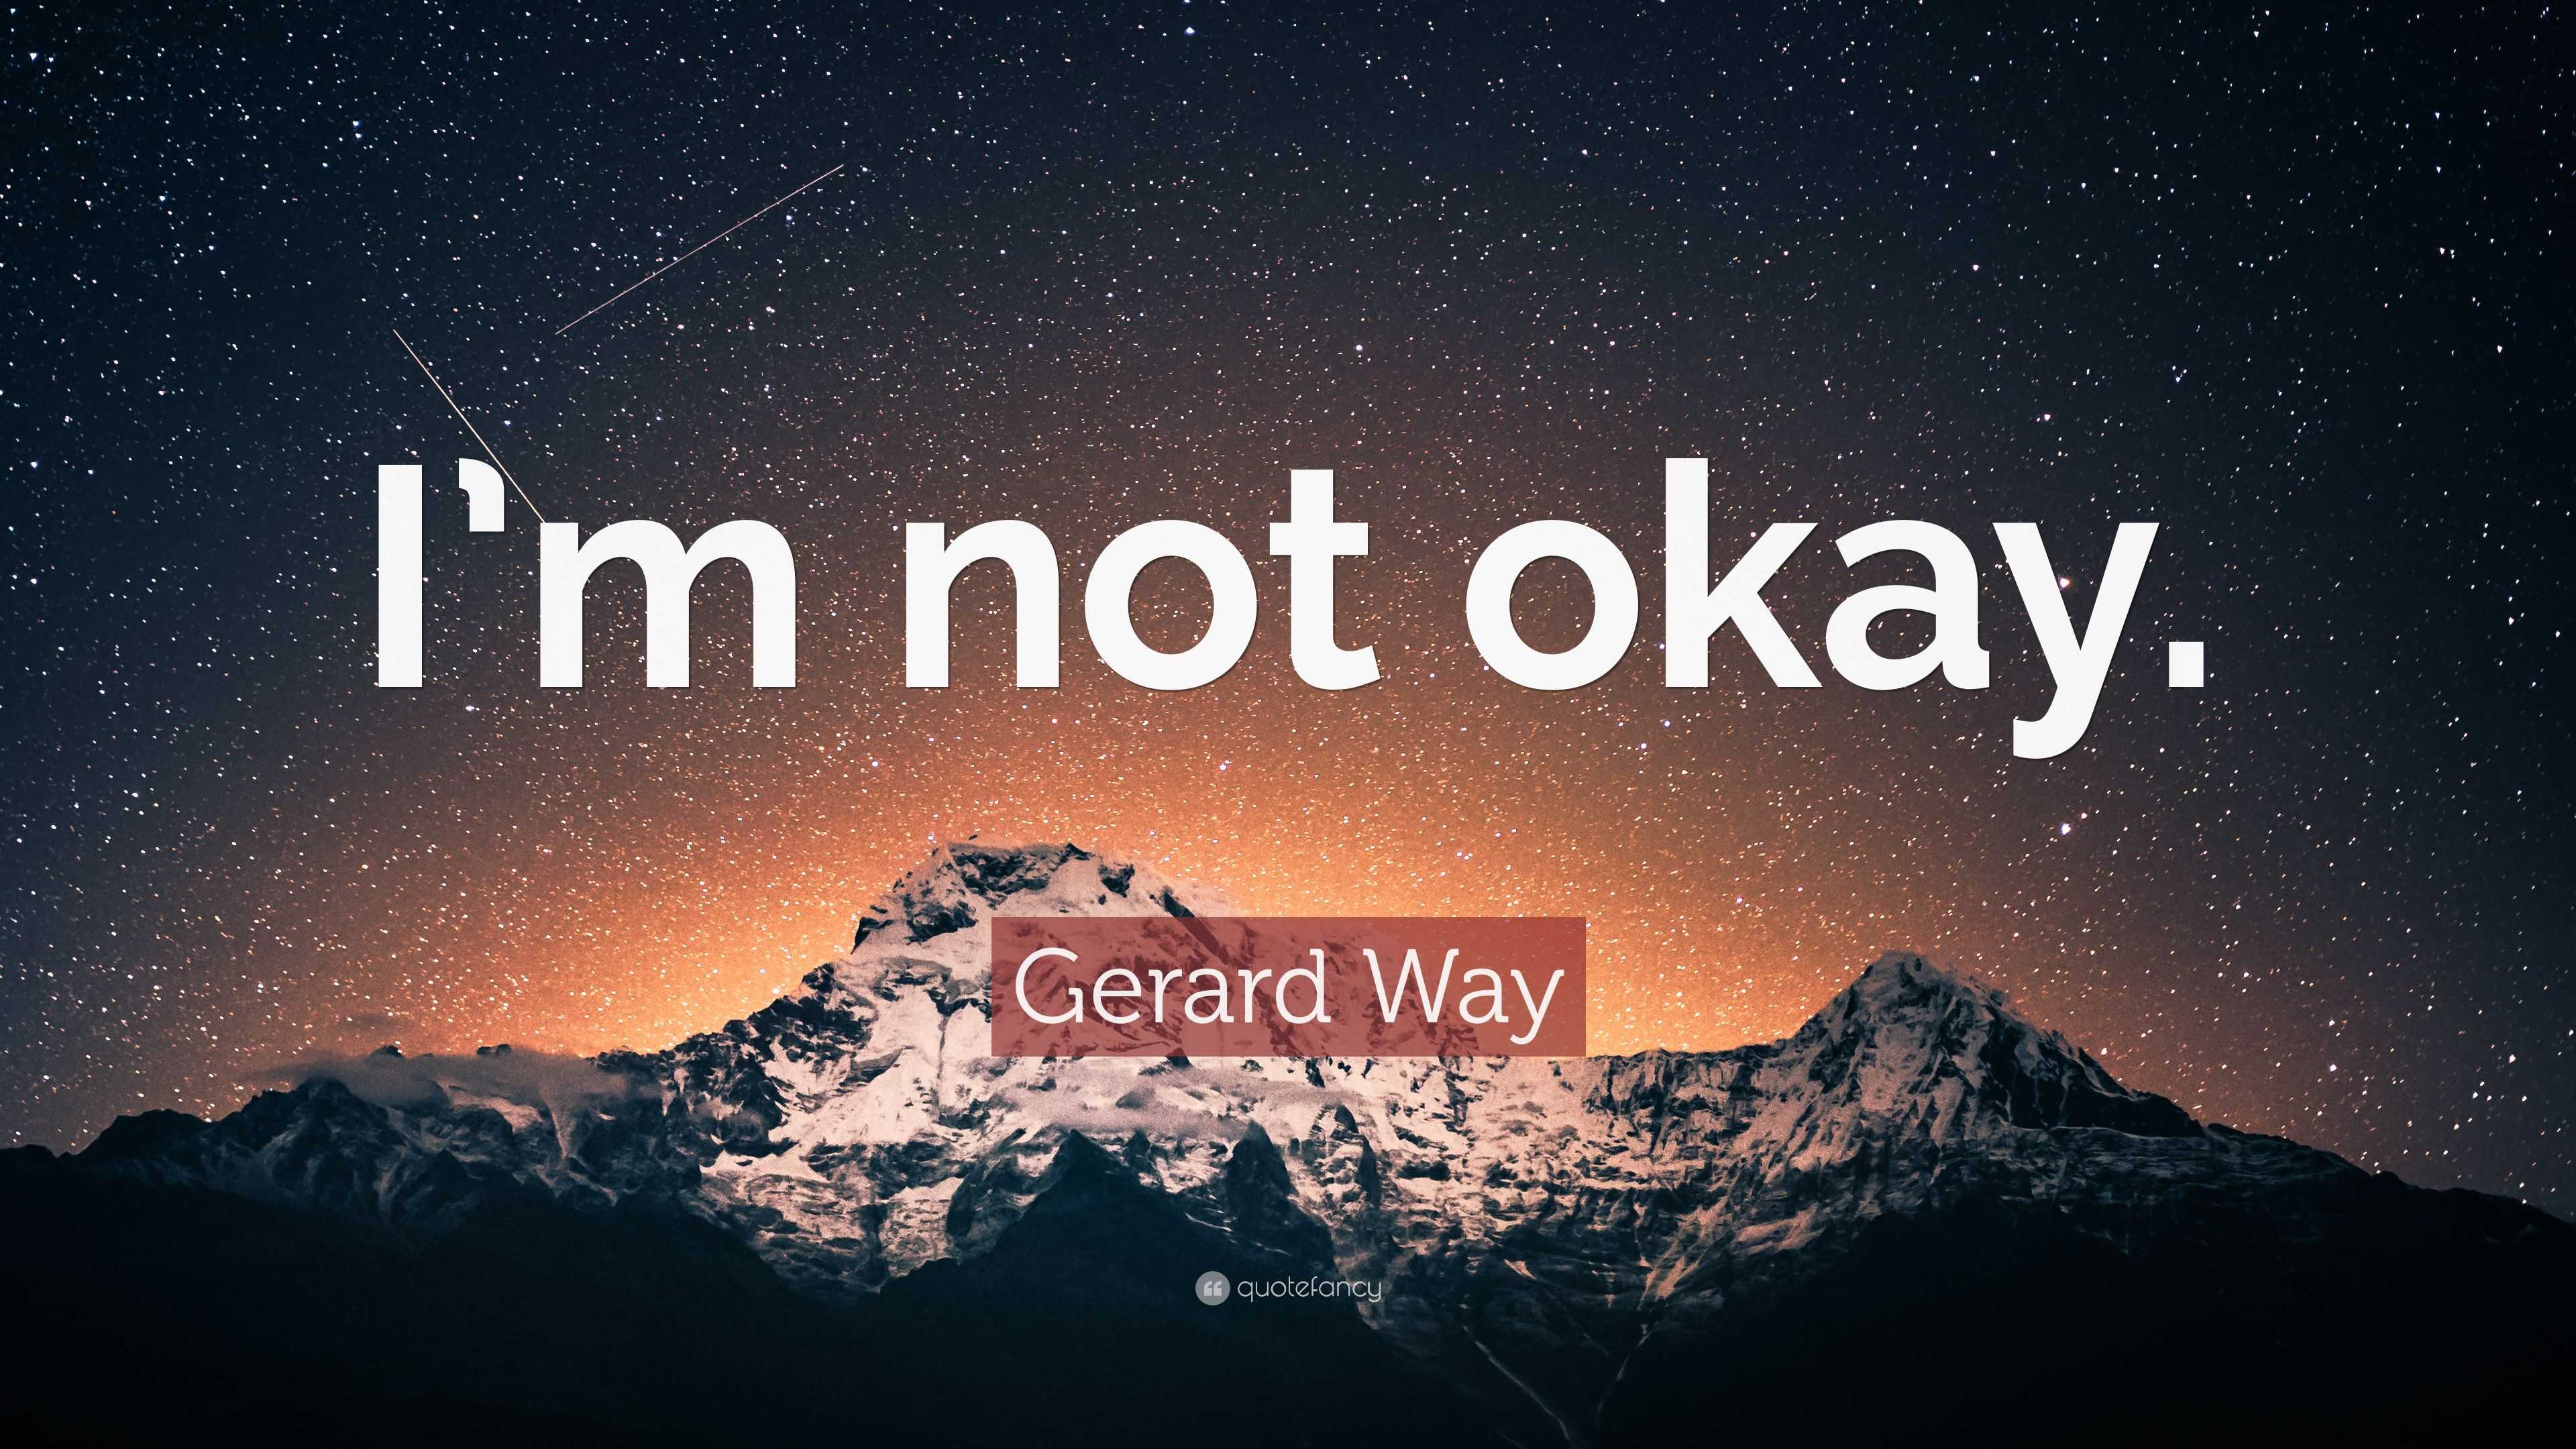 Gerard Way Quote: “I’m not okay.” (12 wallpapers) - Quotefancy